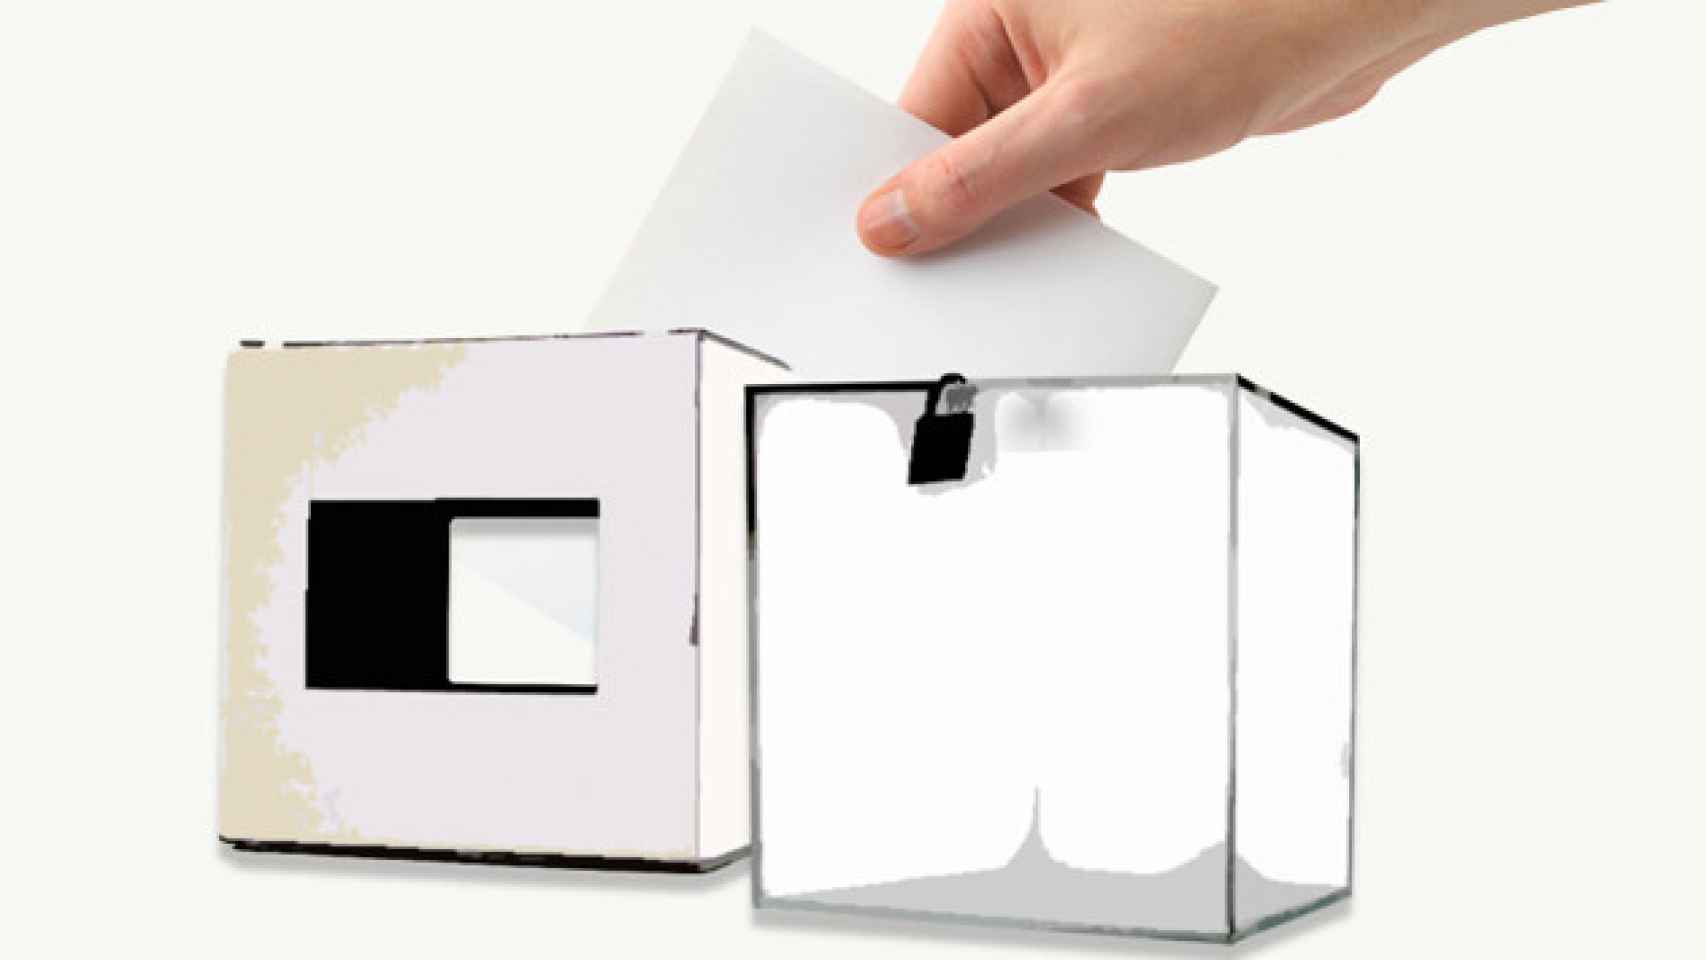 Imagen de una urna para las elecciones y otra para el referéndum / FOTOMONTAJE DE CG